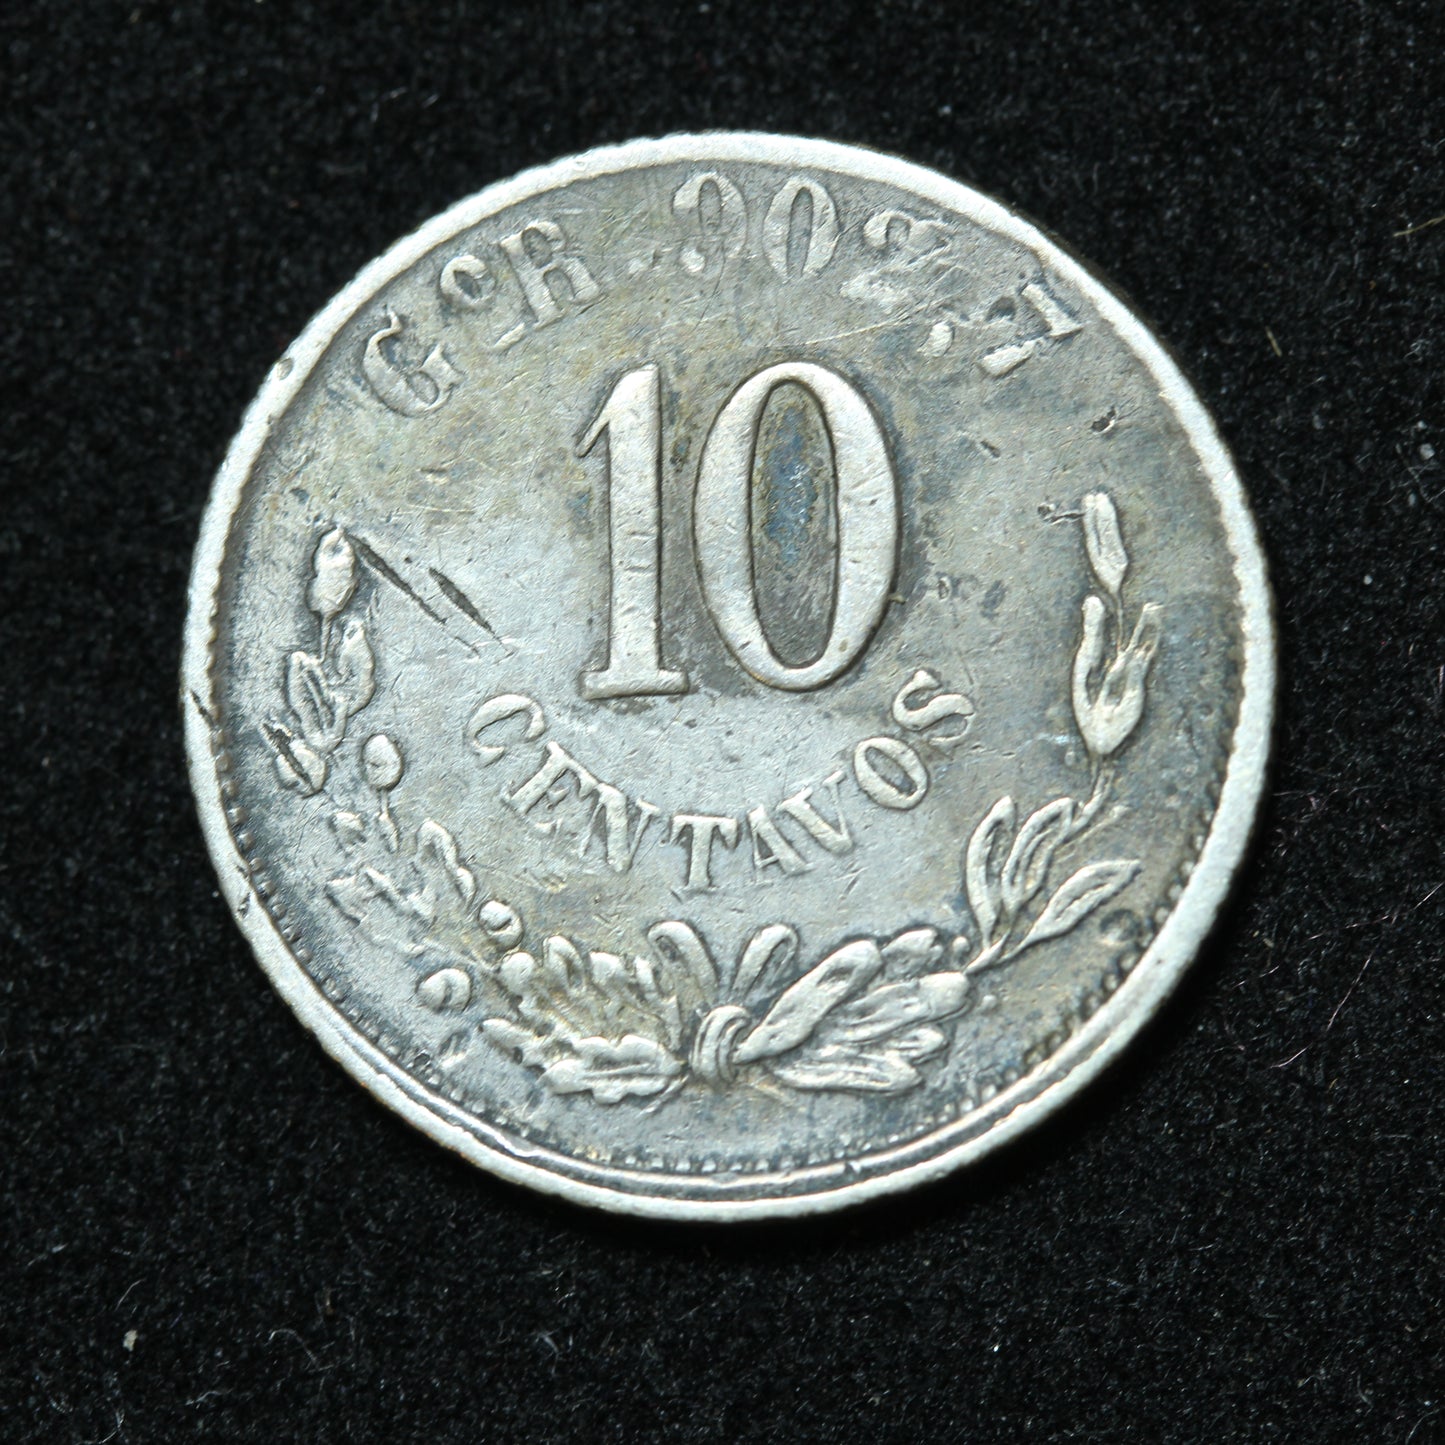 1896 10 Centavos GoR Mexico Second Republic Silver Coin - KM# 403.5